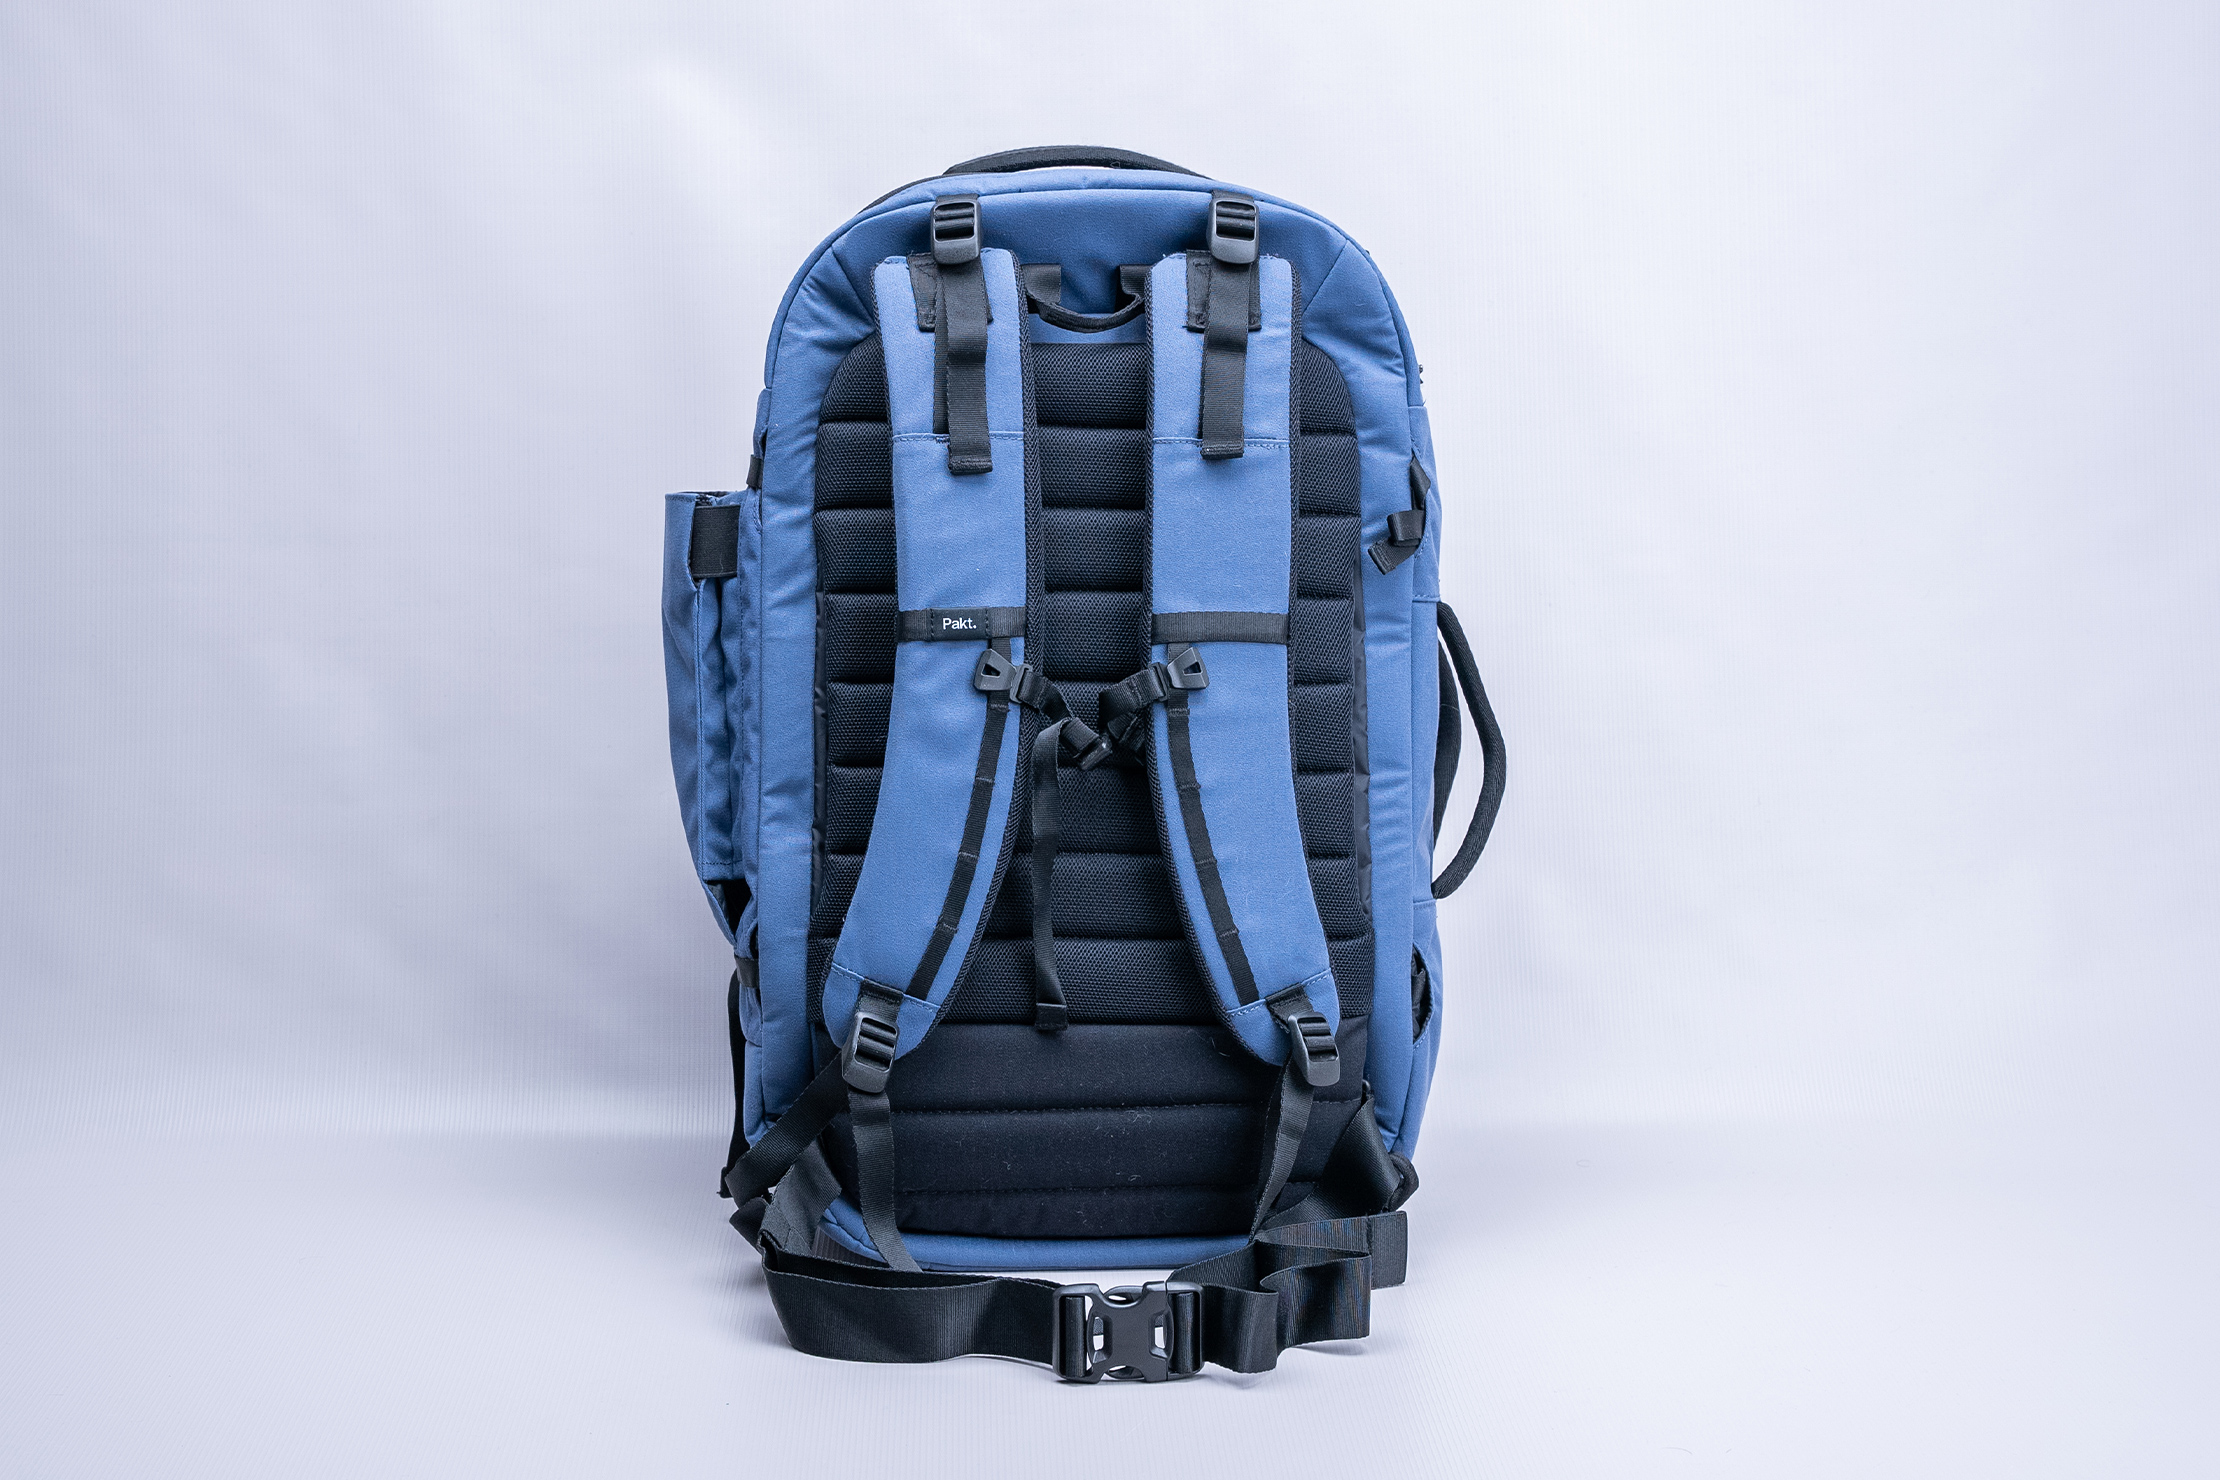 Pakt Travel Backpack V2 (35L) Harness System